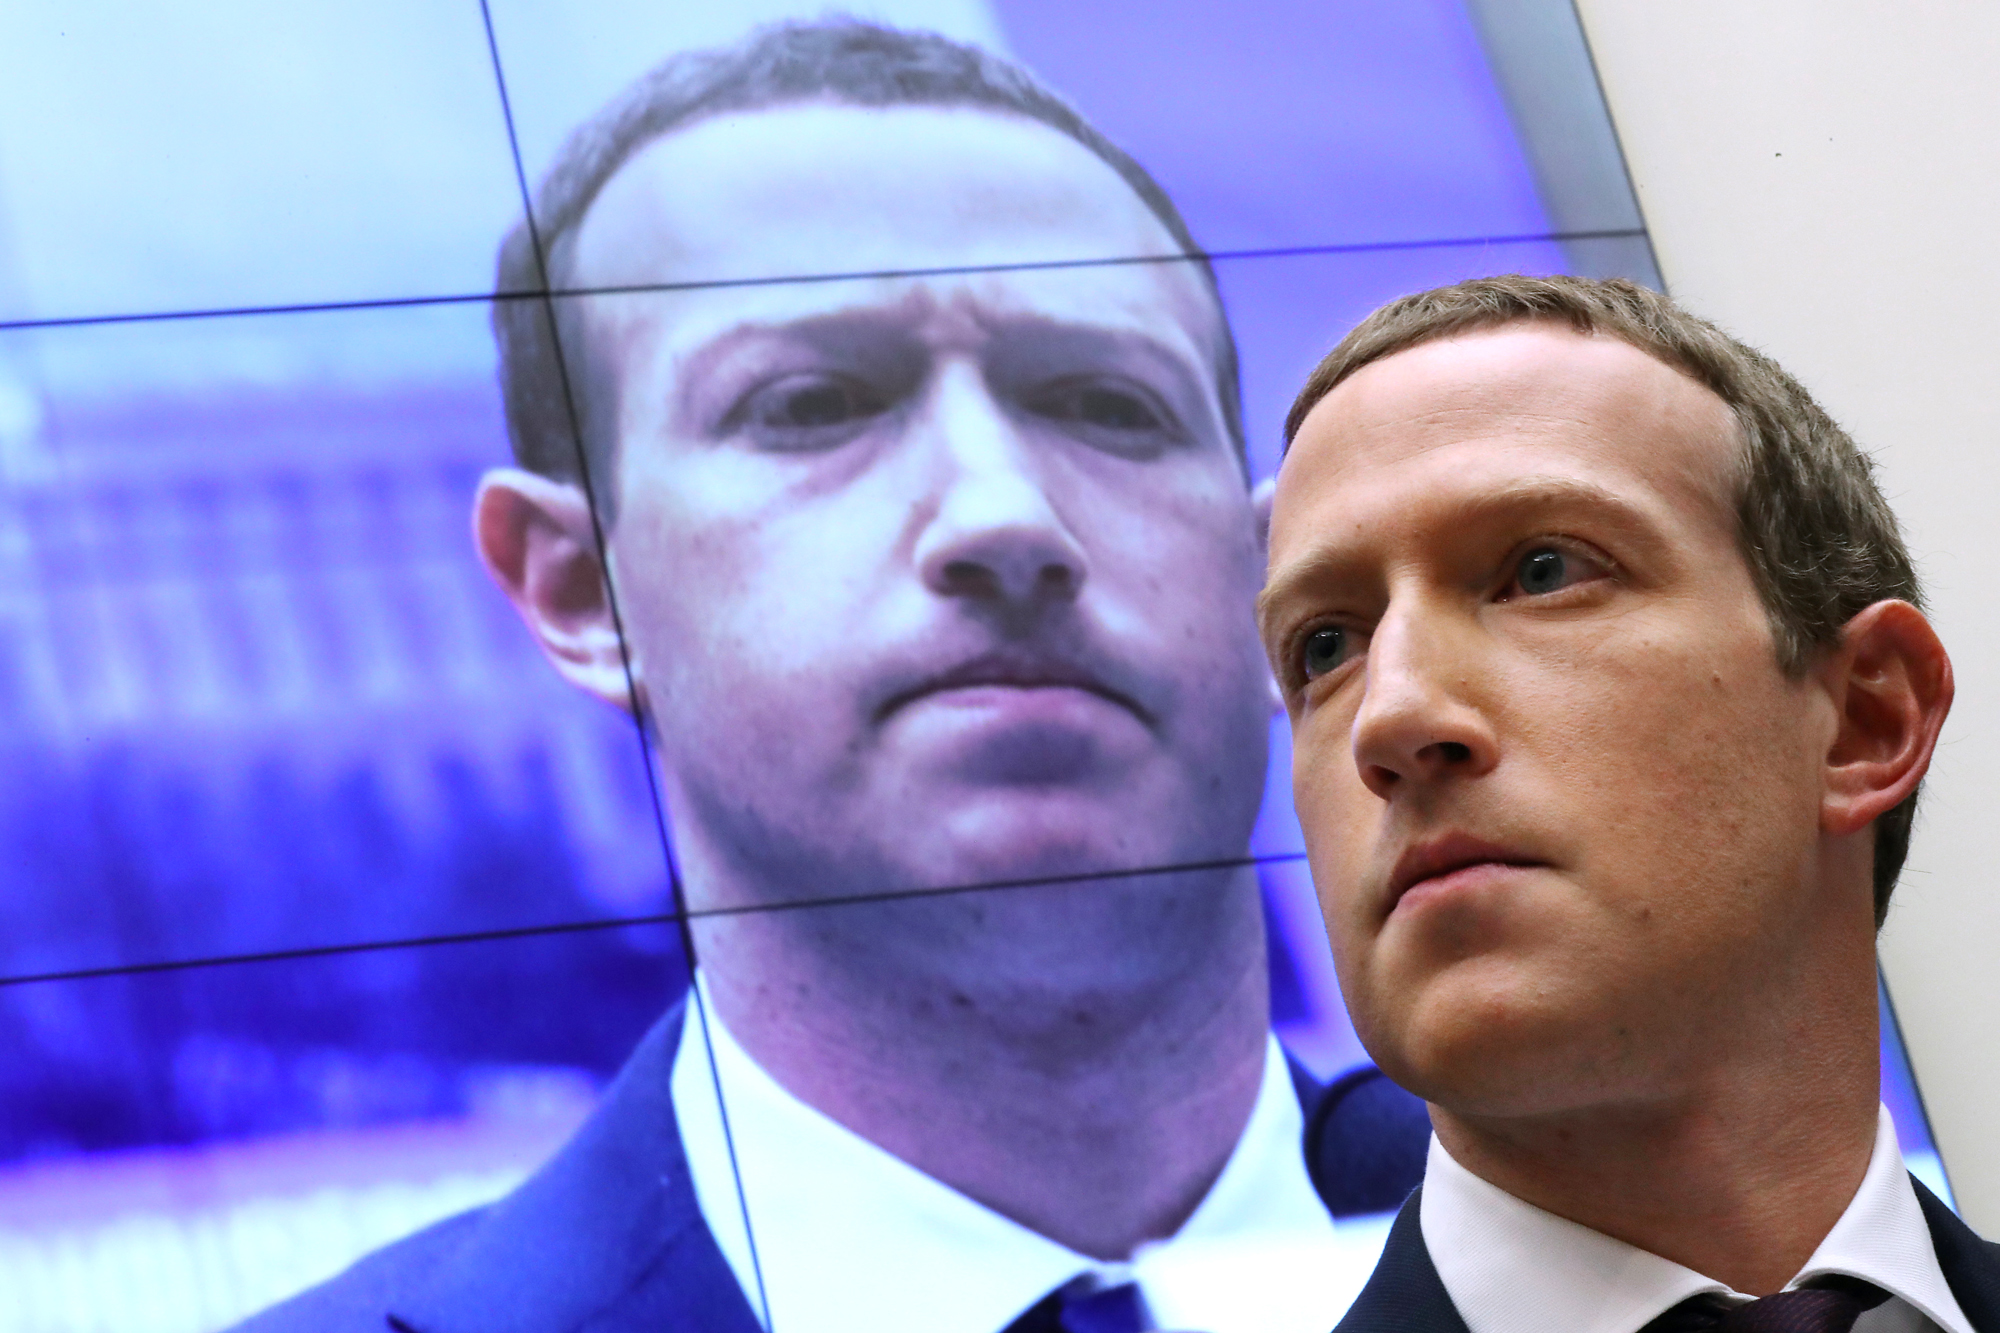 Een foto van Facebook CEO Mark Zuckerberg met achter hem een scherm waarop zijn gezicht geprojecteerd wordt